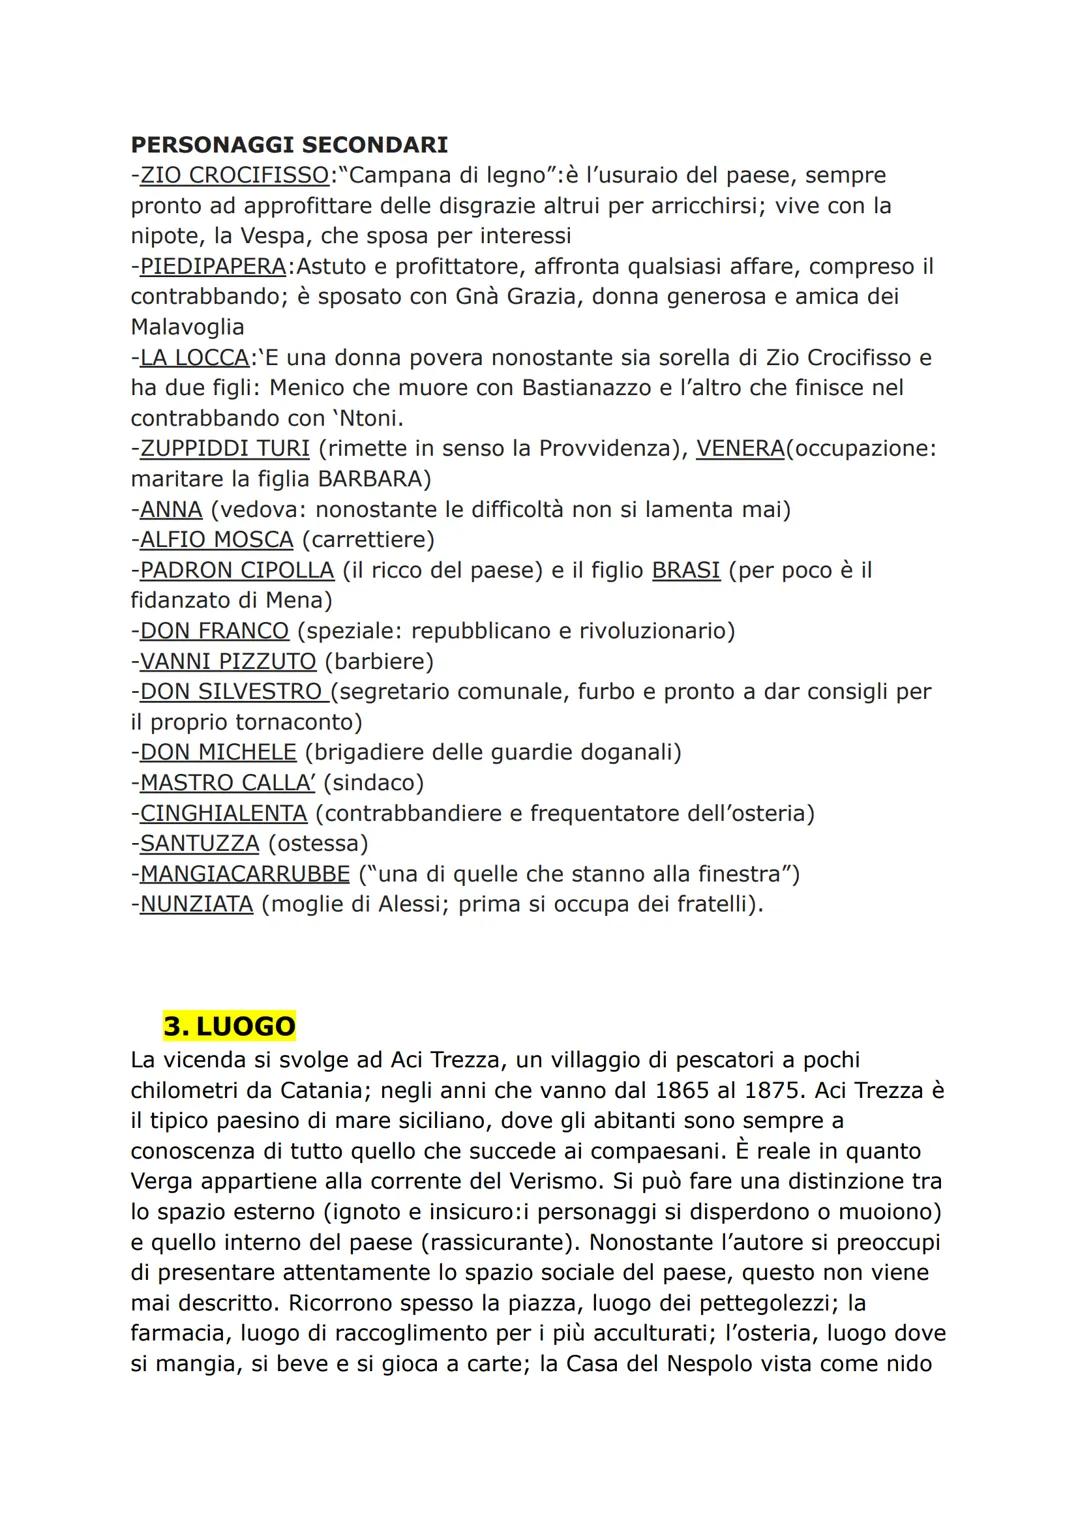 L'ANALISI DI UN'OPERA
1. OPERA
- Autore: Giovanni Verga, (1840-1992), l'autore che riesce ad esprimere
al meglio la poetica del Verismo.
Tit